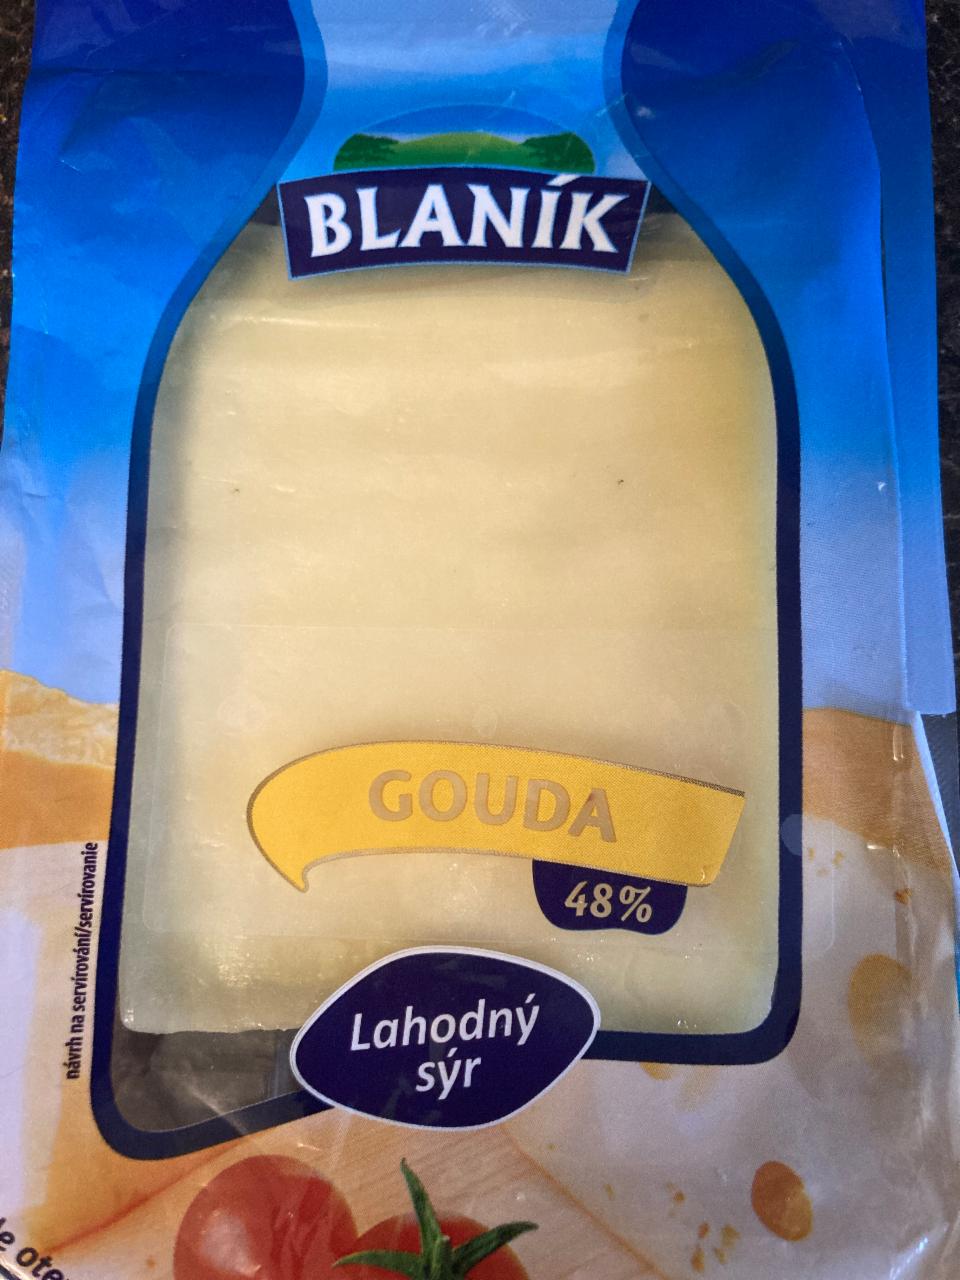 Fotografie - Blaník Gouda 48% Lahodný sýr